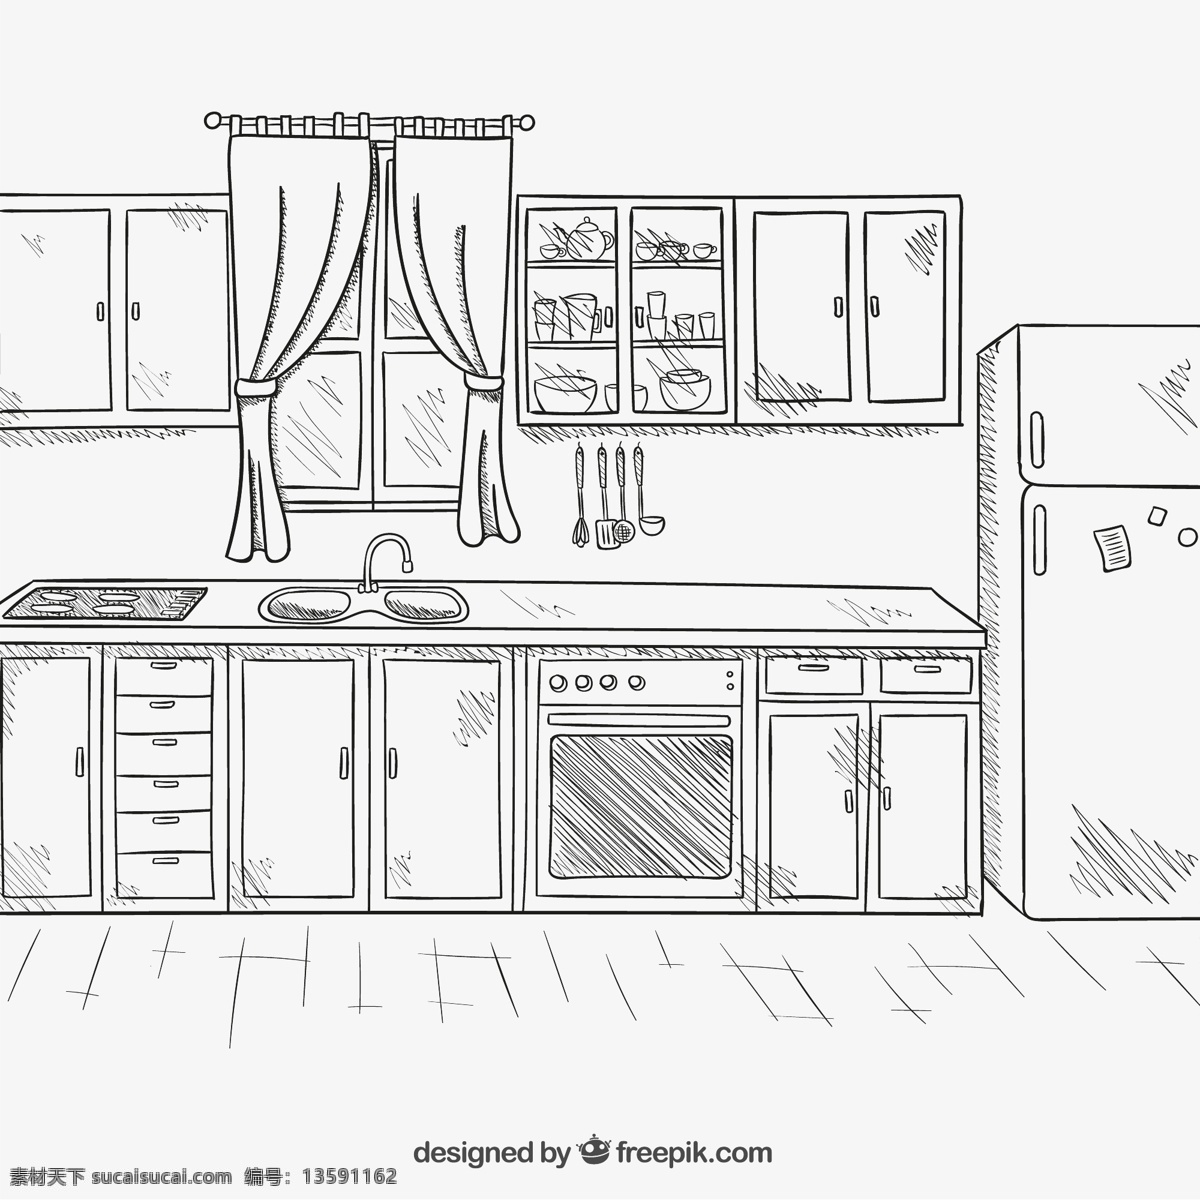 手绘整洁厨房 手绘厨房 厨房 厨具 厨房用品 冰箱 窗帘 碗柜 烤箱 勺子 铲子 组合柜 窗户 水壶